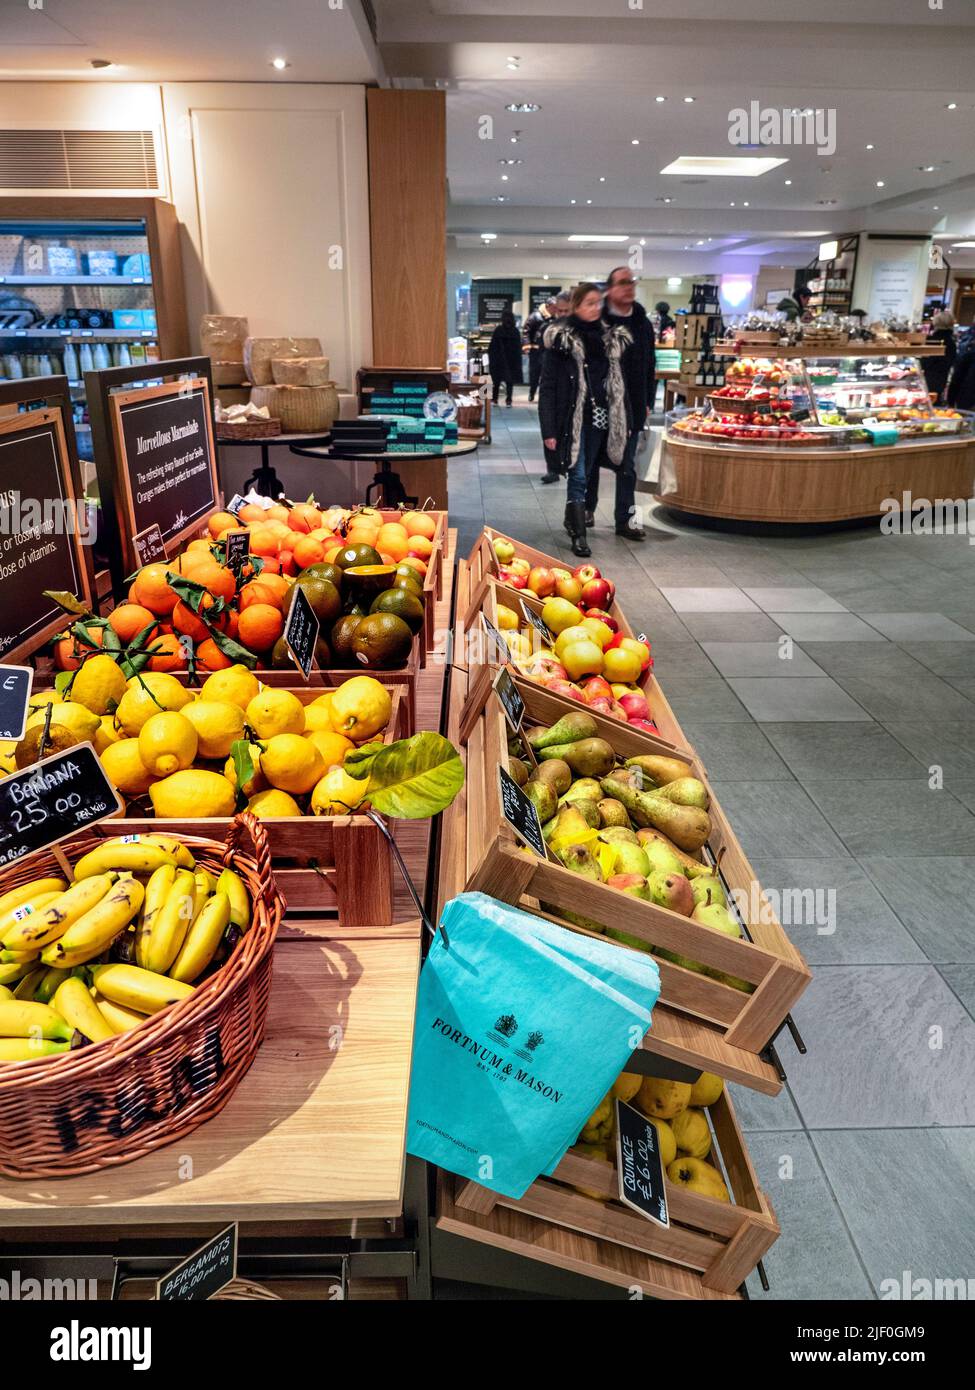 Fortnum & Mason Food Hall mit offener Ausstellung von Obst und Gemüse zum Verkauf mit Fortnums Marken-Recycling-Papiertüten, die für den bequemen Einkauf platziert werden. Ananas Bananen und Äpfel in Korbkörben. Fortnum & Mason Food Hall Department, Piccadilly St. James's, London W1A 1ER Stockfoto